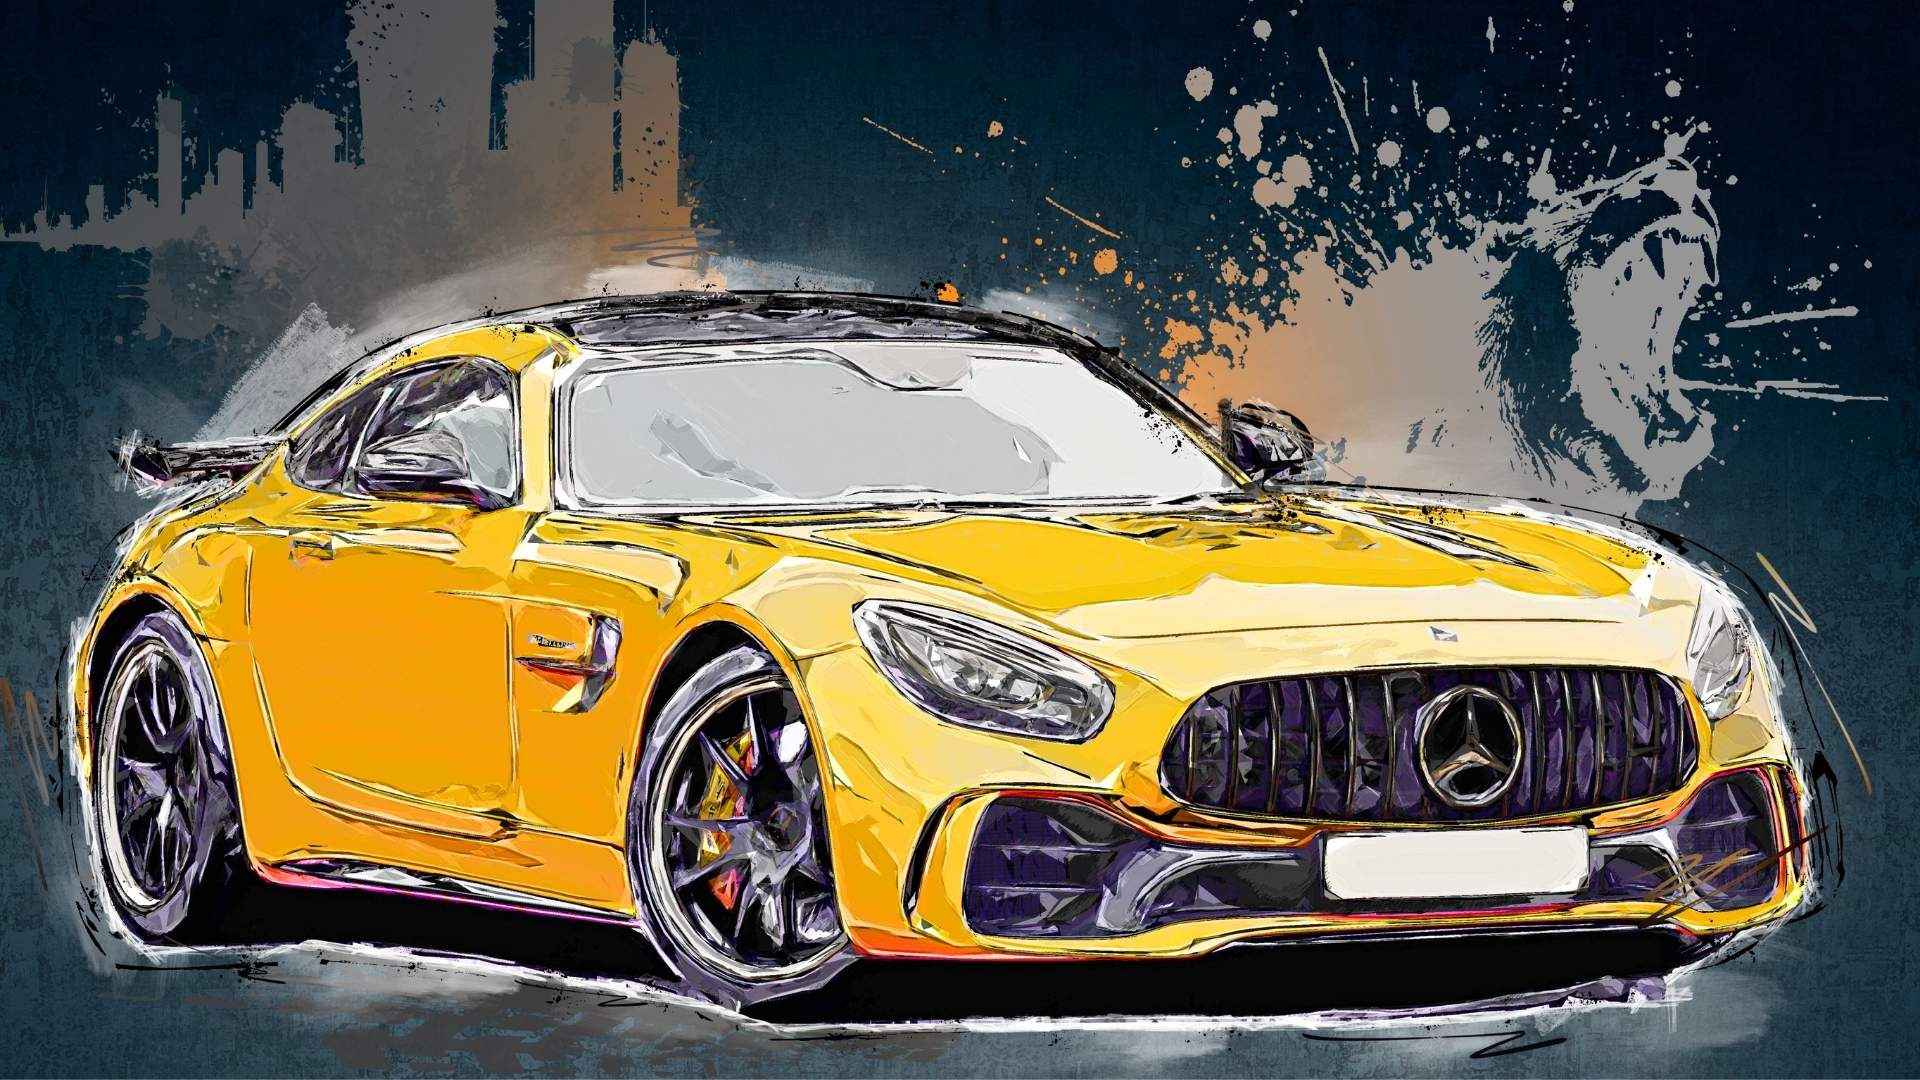 Grafika stylizowana na kolorowy szkic. Żółty Mercedes na tle ryczącego lwa.